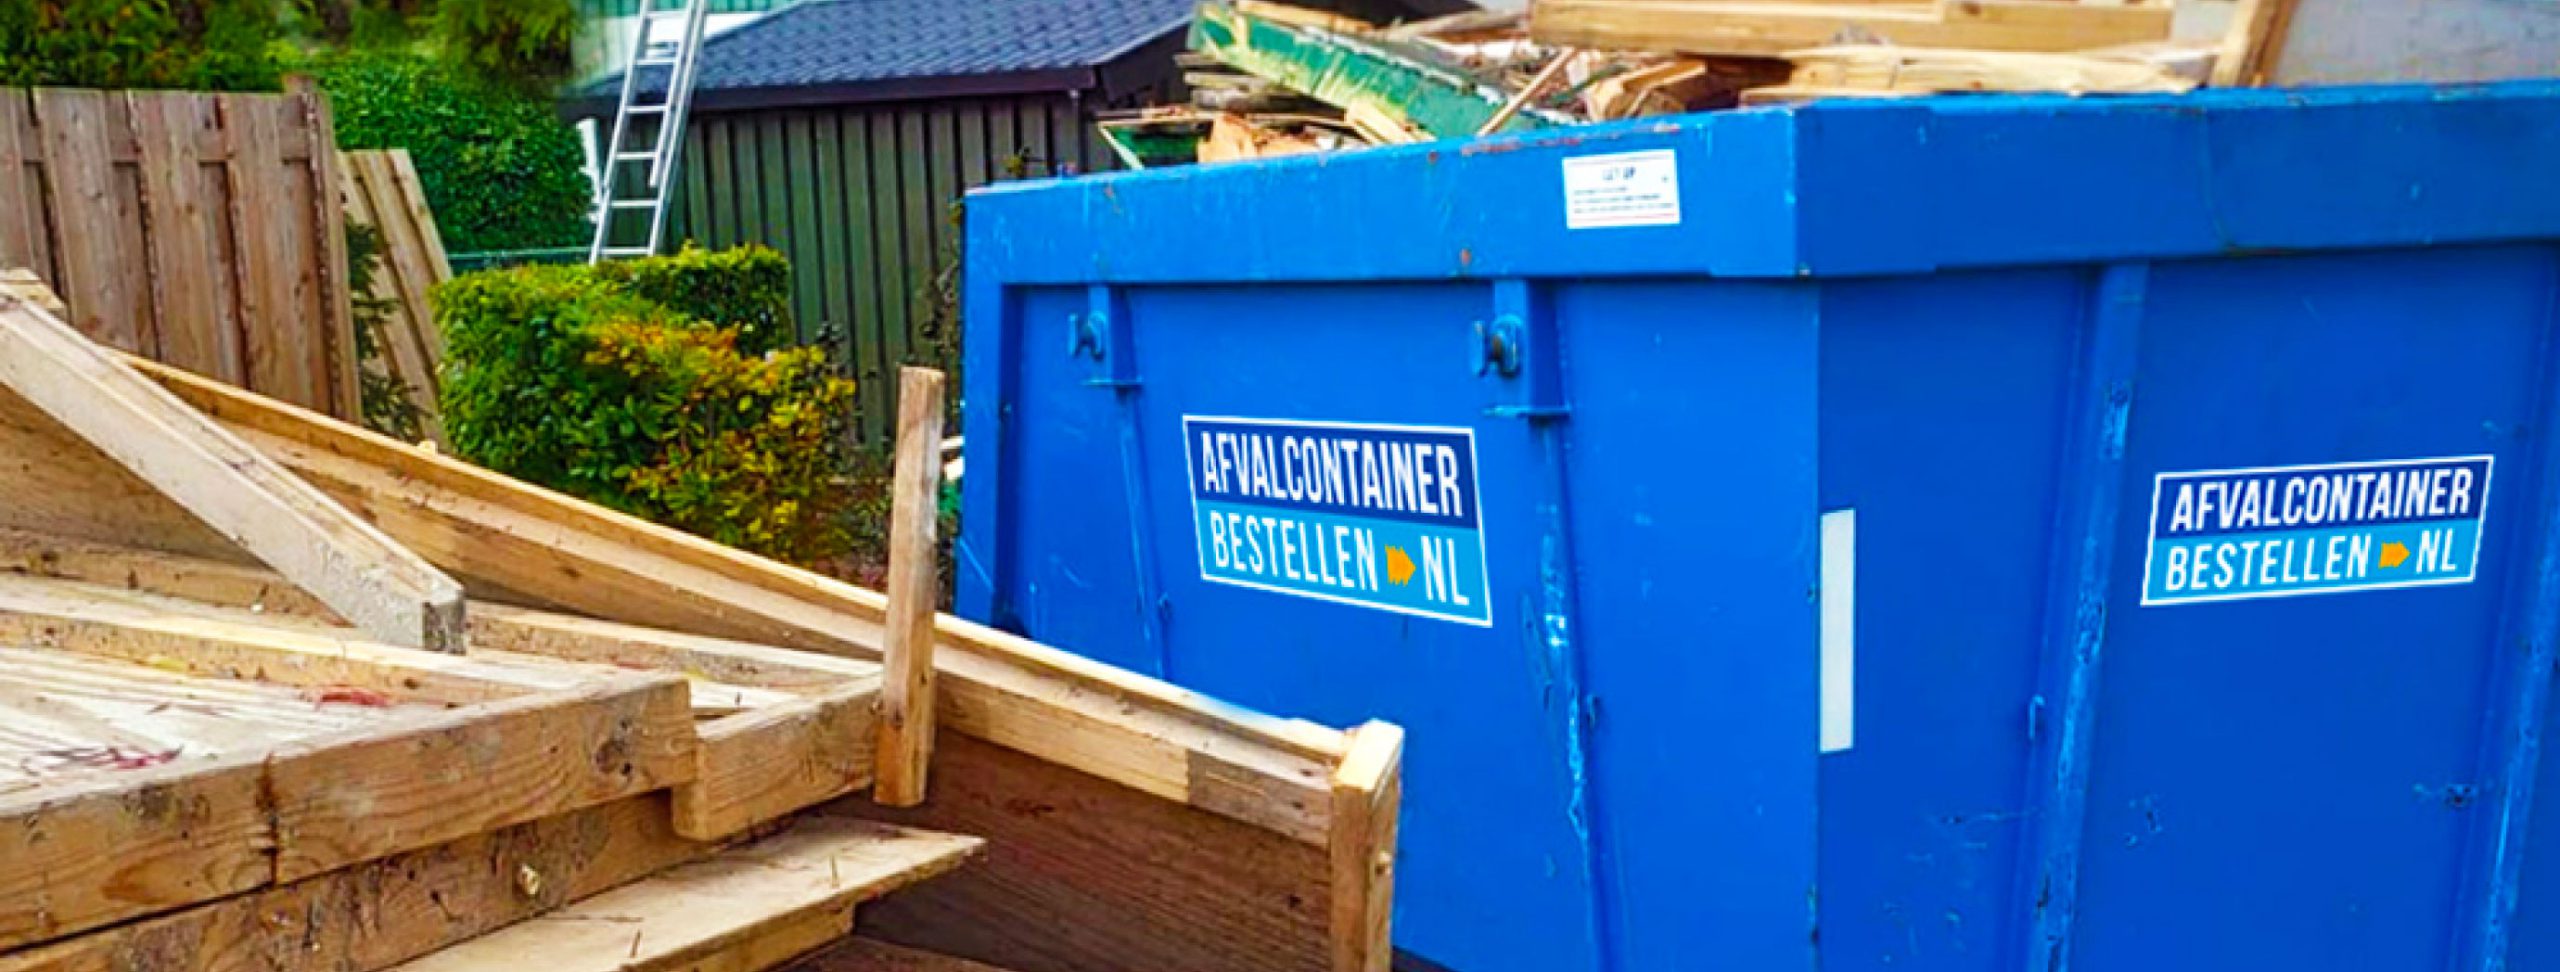 Container voor hout afvoeren | Afvalcontainerbestellen.nl